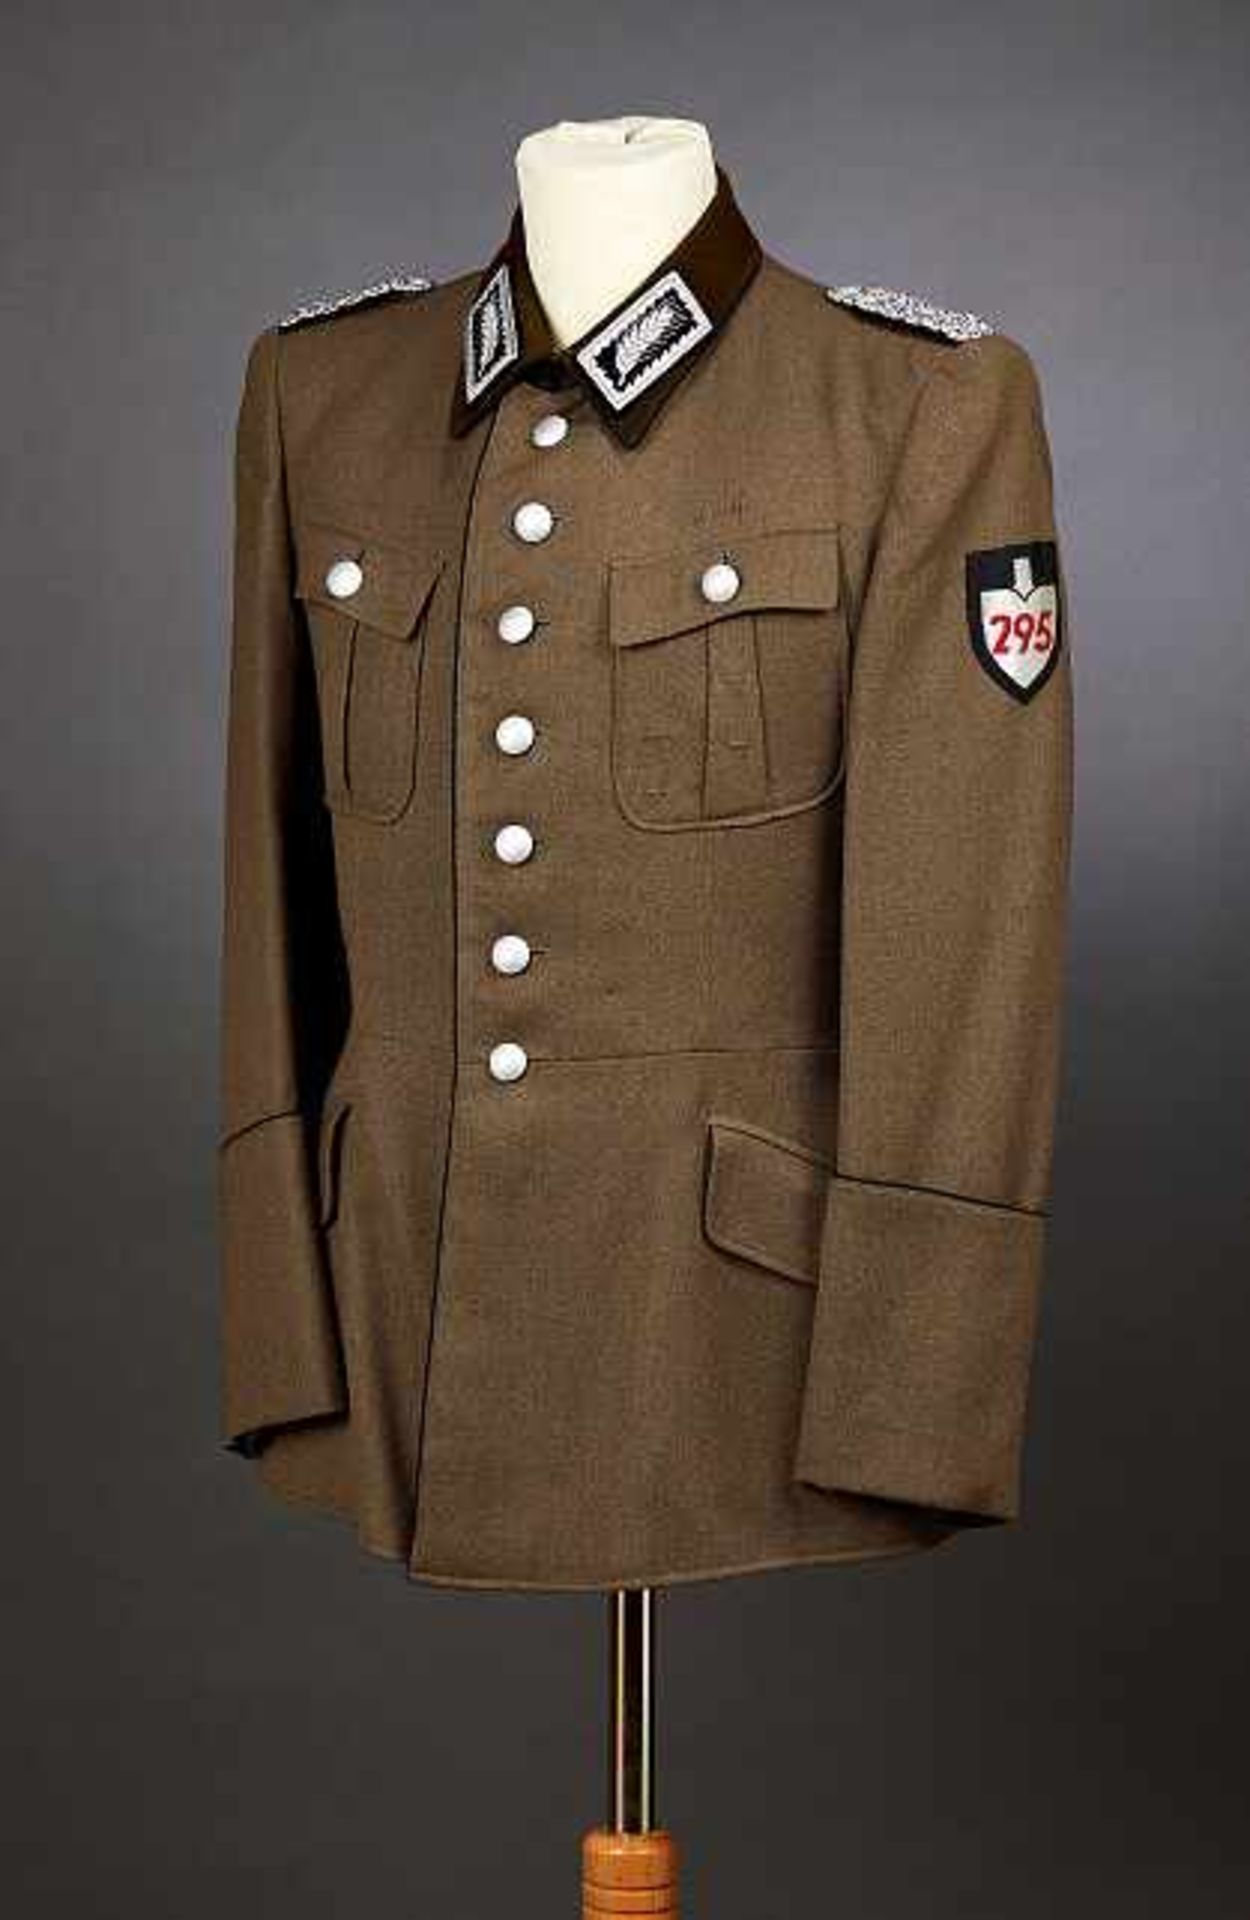 Deutsches Reich 1933 - 1945 - Reichsarbeitsdienst-RAD : RAD Servive Tunic for Oberstfeldmeister.